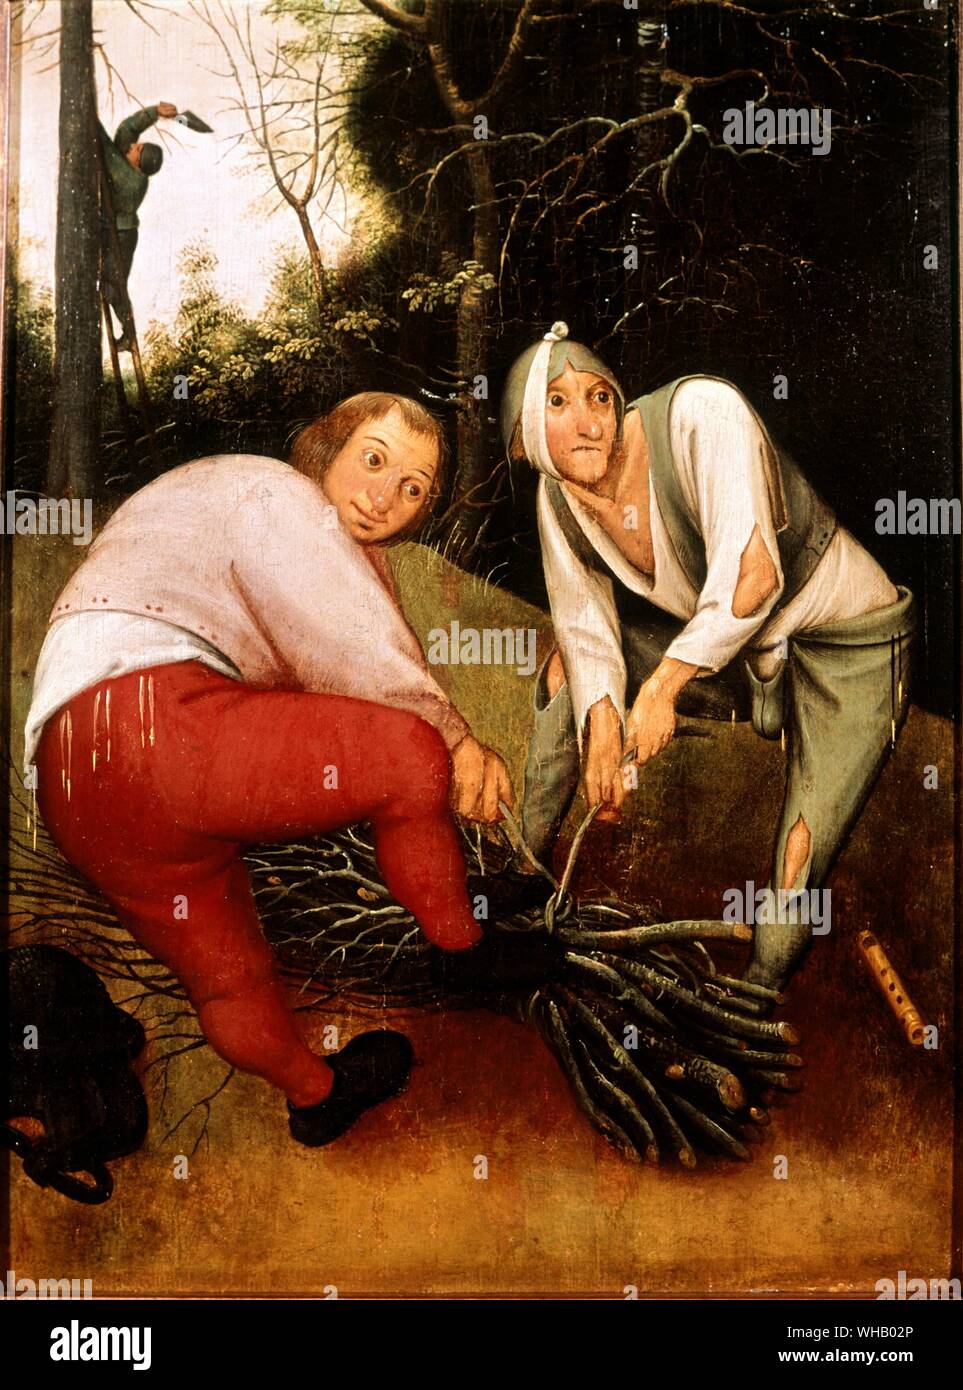 Deux paysans contraignant les pédés. Artiste Brueghel, Pieter le jeune (c.1564-1638). à l'Institut des Arts, Université de Birmingham. Pieter Brueghel le Jeune (1564 - 1638) était un peintre flamand, fils de Pieter Brueghel l'ancien. Lorsqu'il n'avait que cinq ans, son père est mort. Pieter Brueghel le Jeune a reçu sa formation artistique du peintre de paysage flamand Gilles Jean Baptiste Oudry. Brueghel plus tard même épousé la sœur de son maître.. Pieter Brueghel le Jeune est devenu un maître en 1585. Il a ensuite commencé à peindre des paysages, des sujets religieux et de fantaisie Banque D'Images